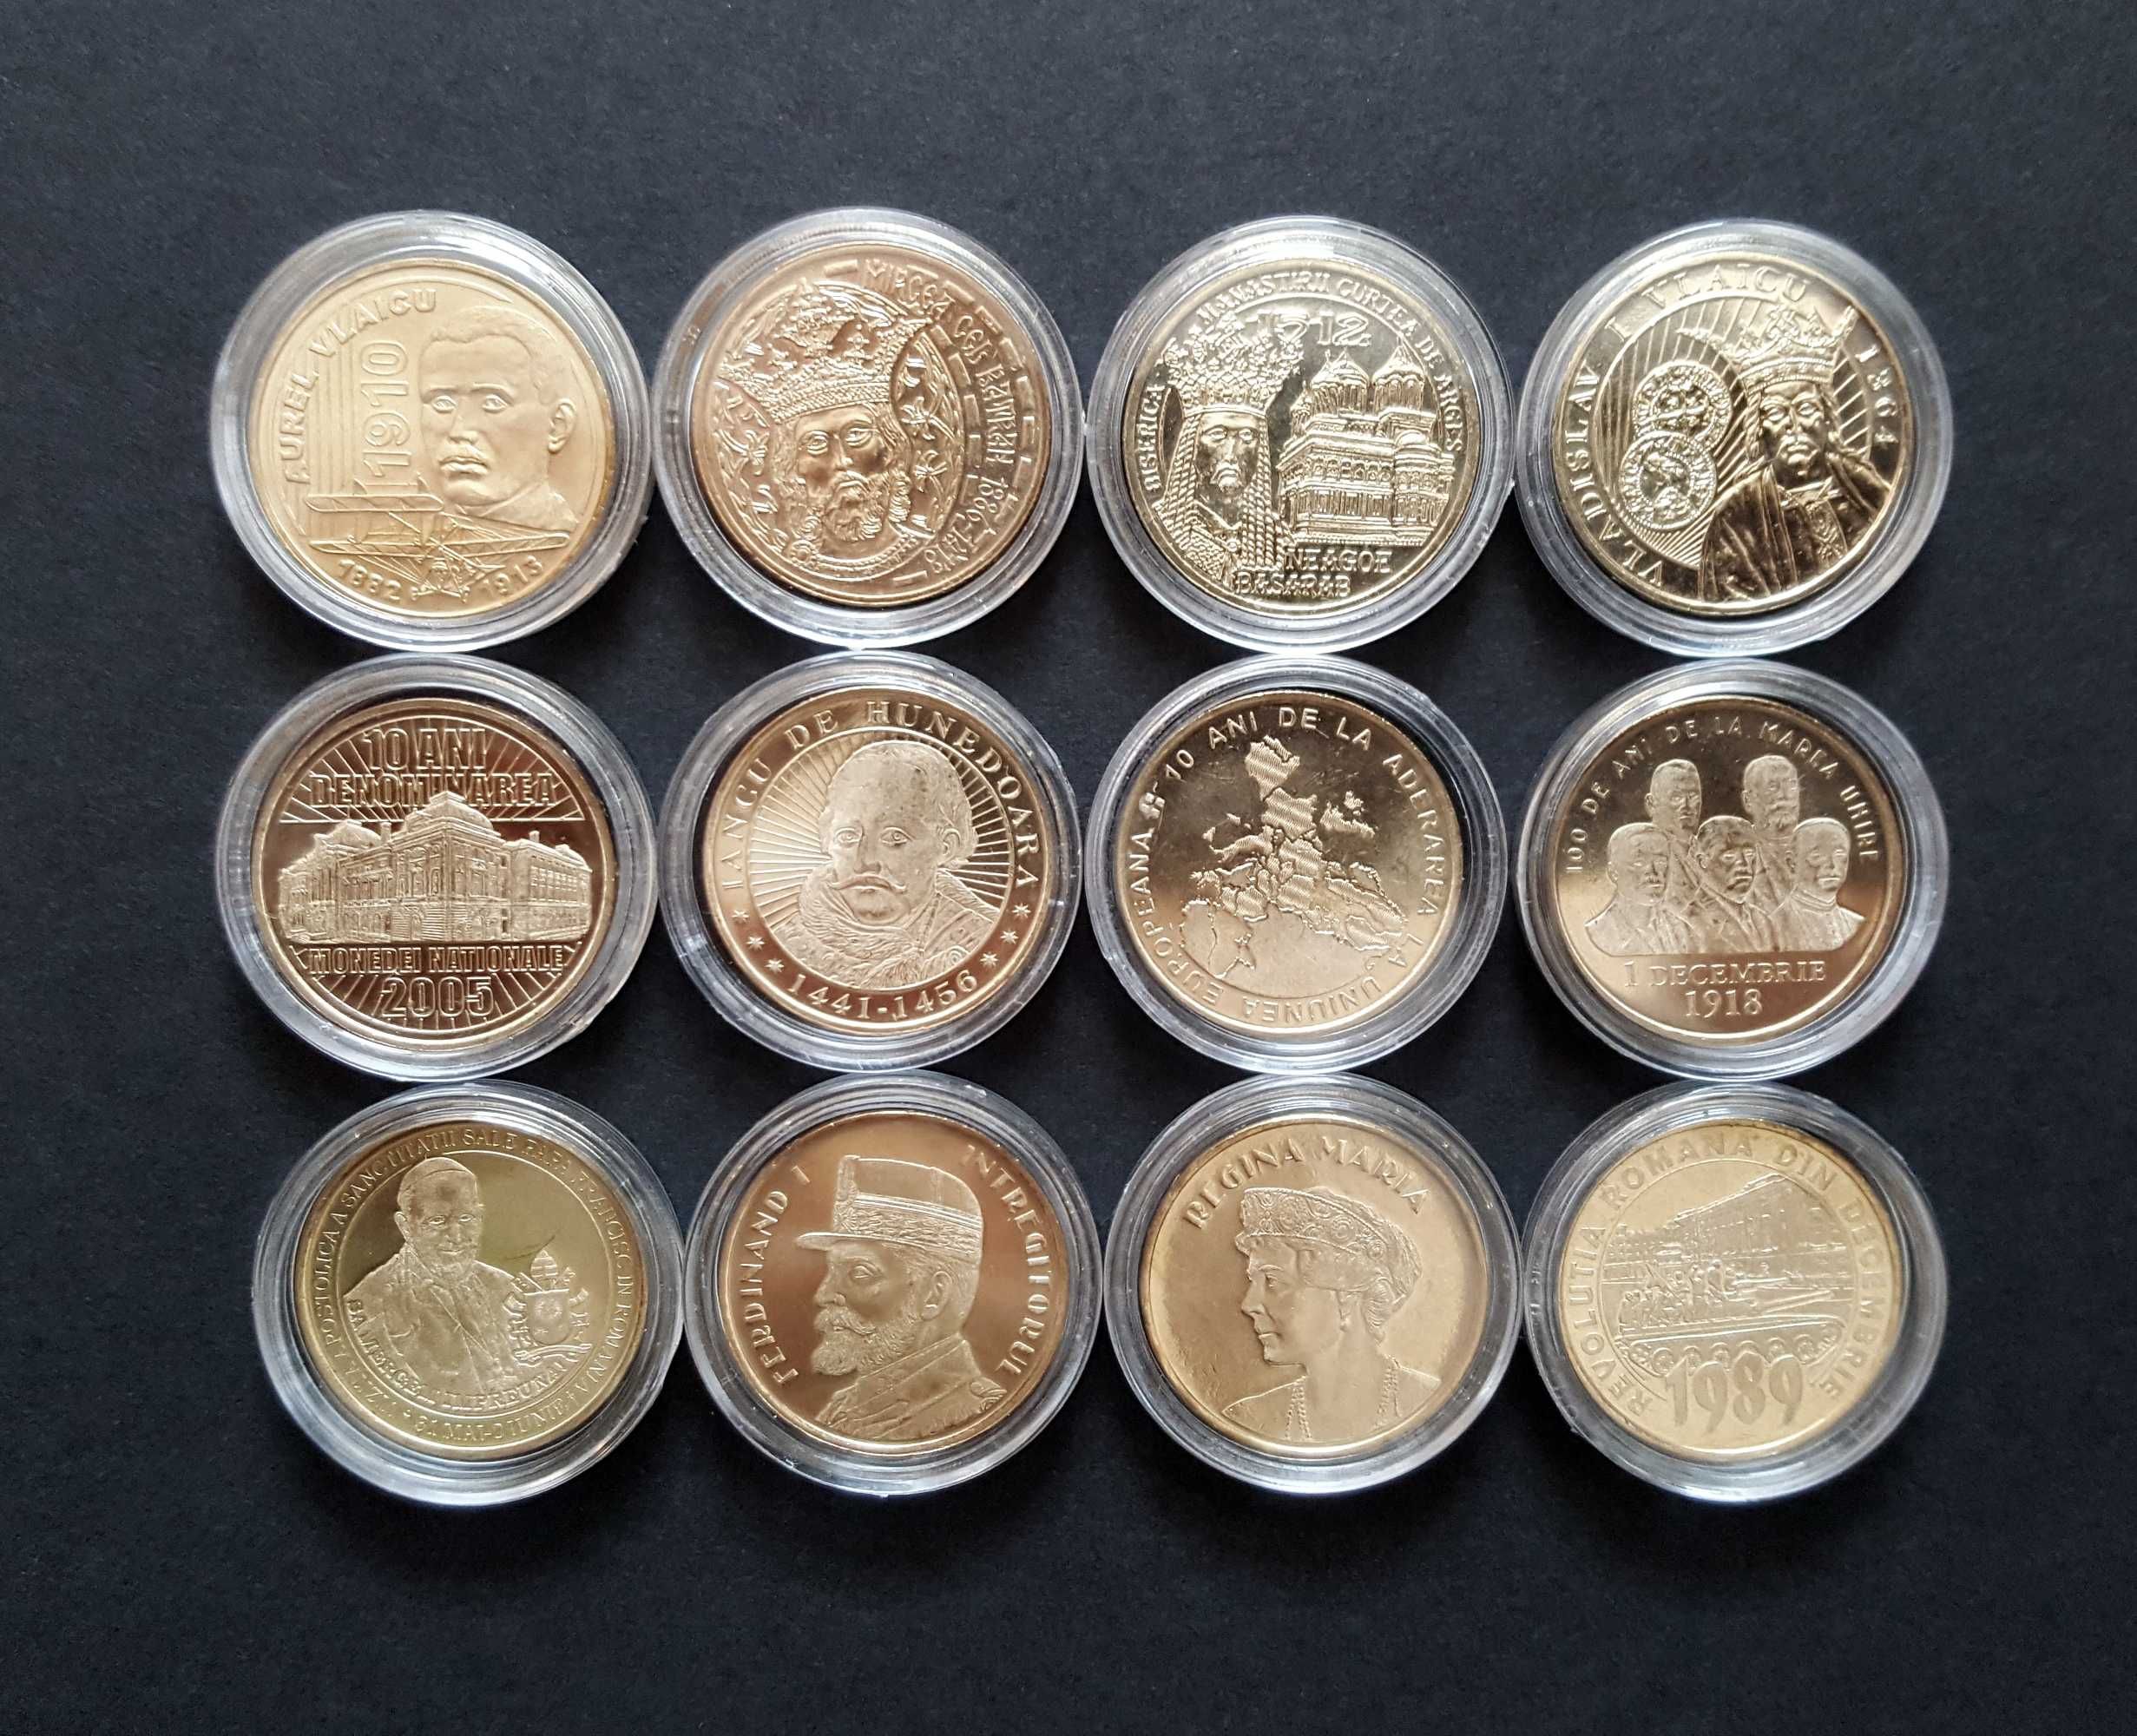 Set 12 monede comemorative 50 bani din fisic, necirculate, in capsule